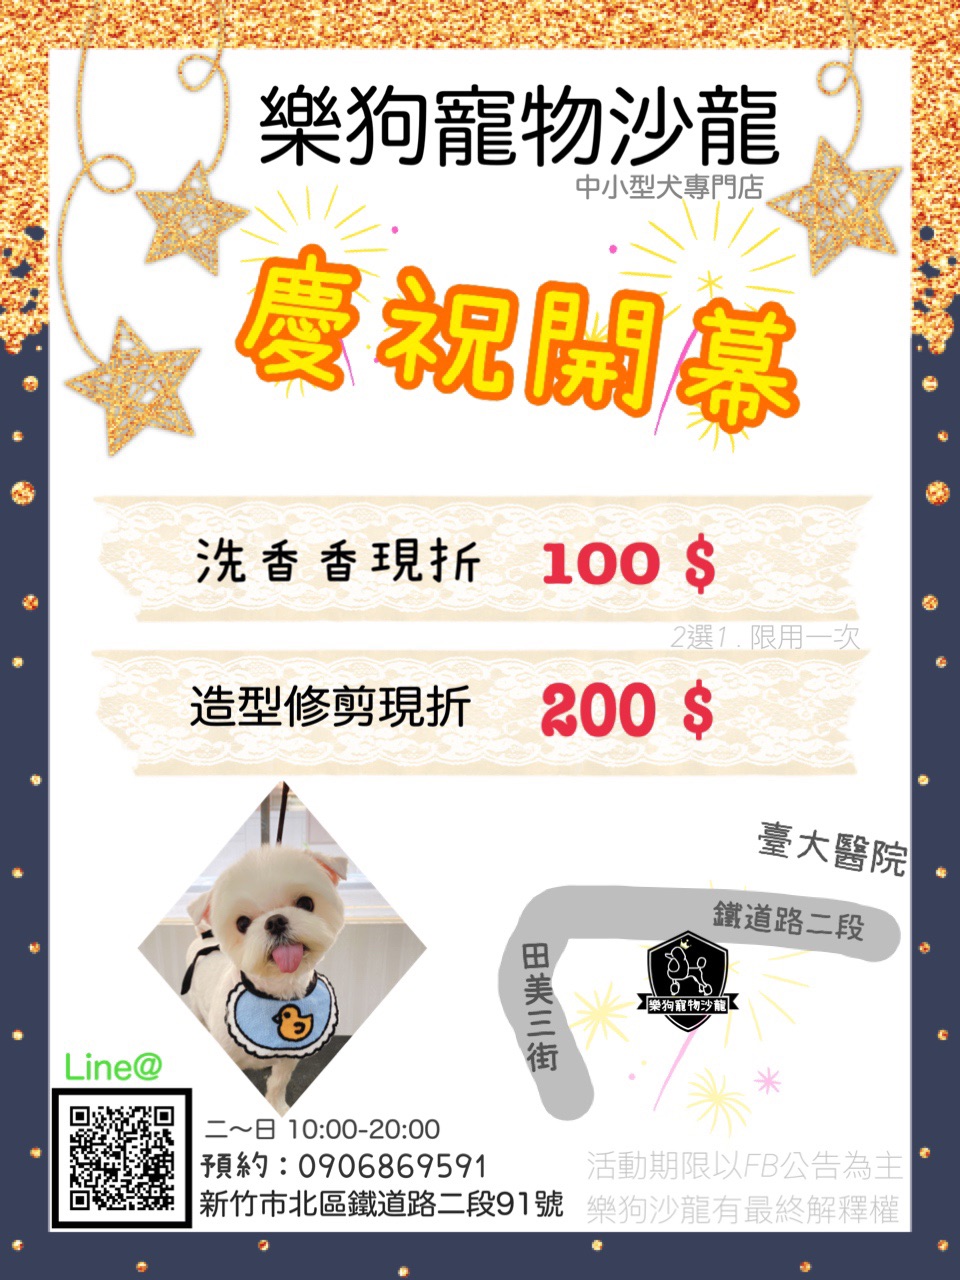 樂狗寵物沙龍 - 20210507213336-394549070.jpg(圖)